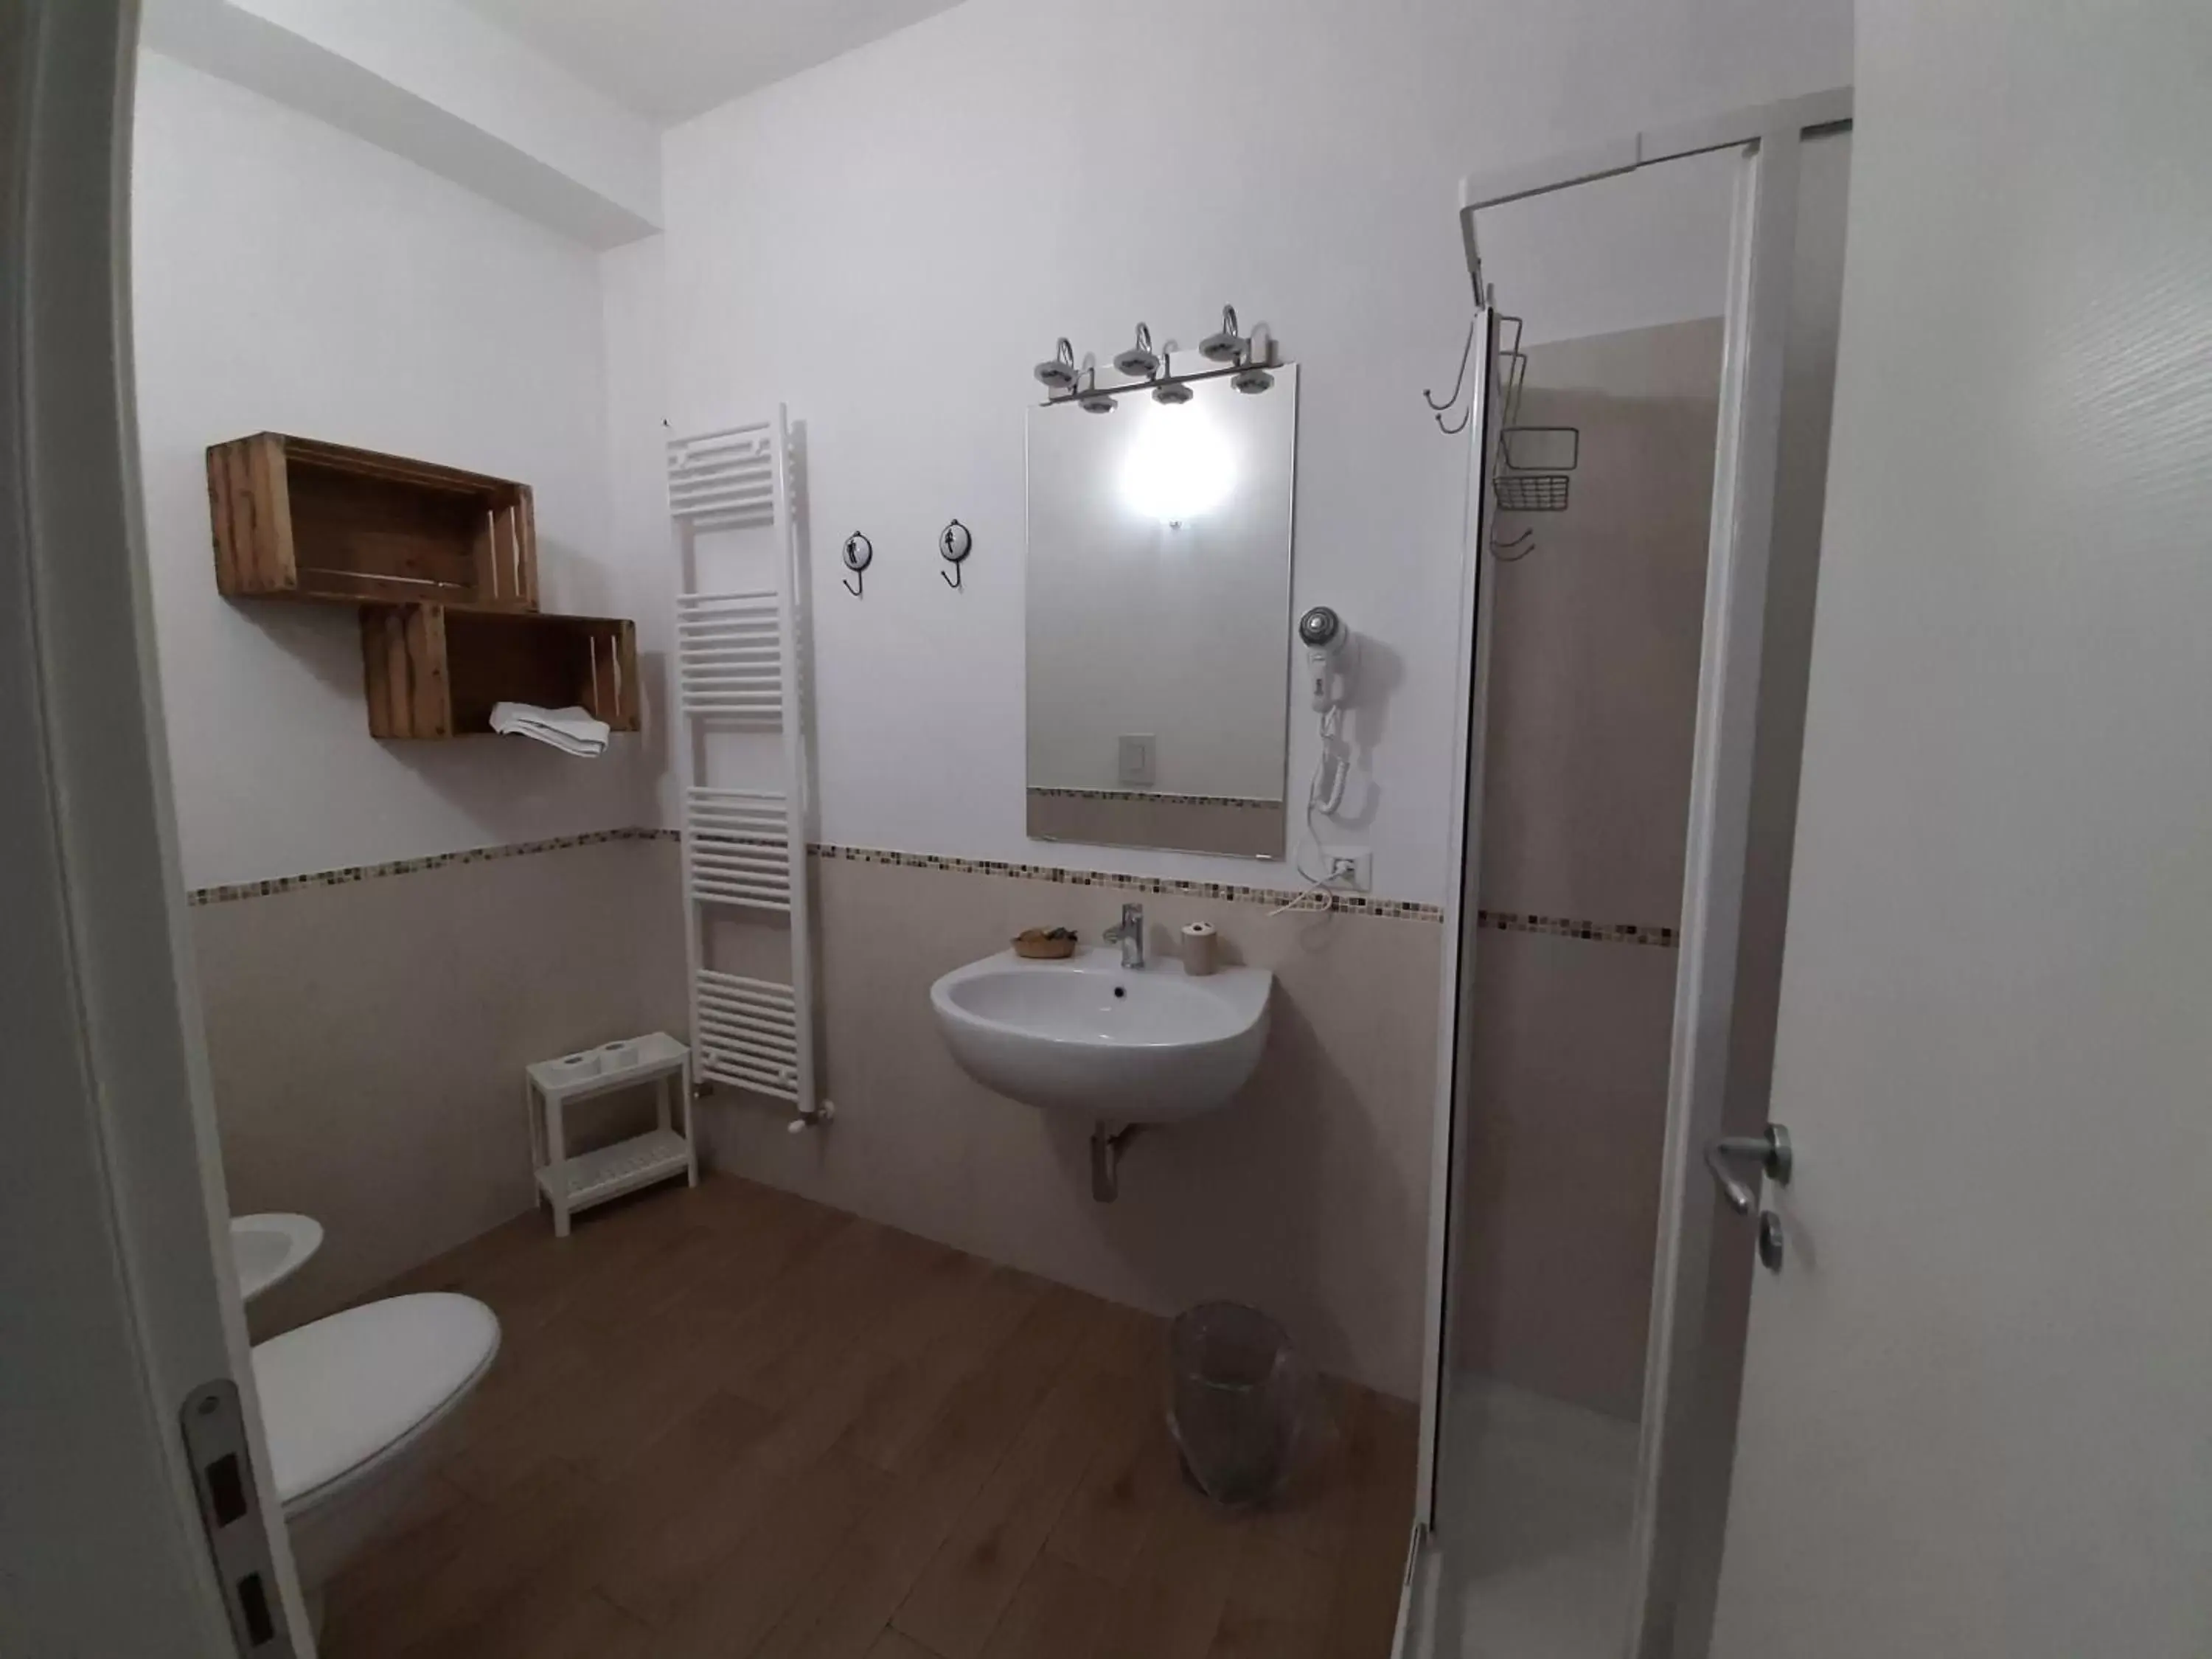 Area and facilities, Bathroom in La Creta b&b